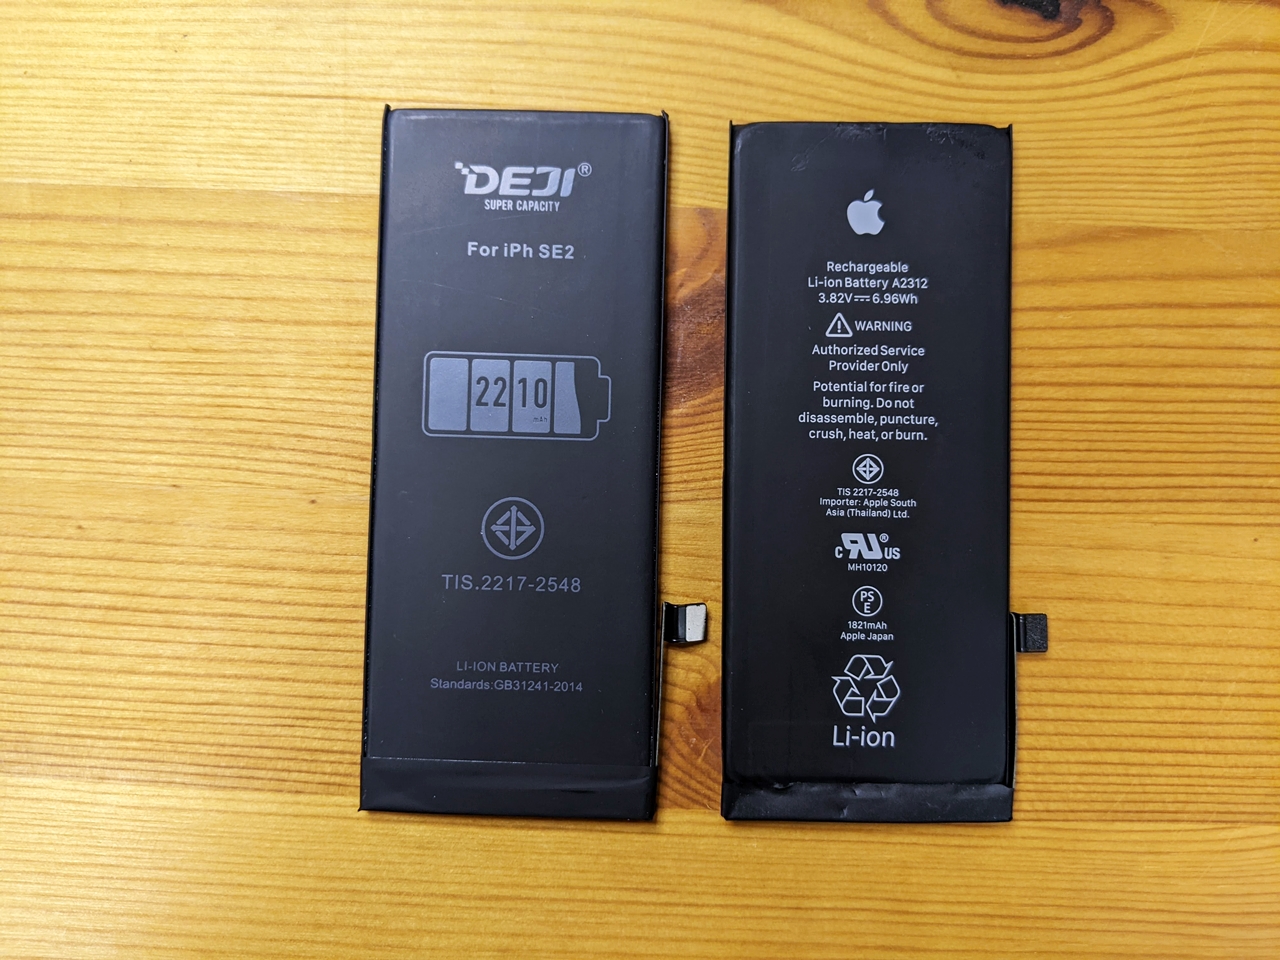 DEJI 새배터리 (왼) 애플 정품 배터리 (오) : 앞면